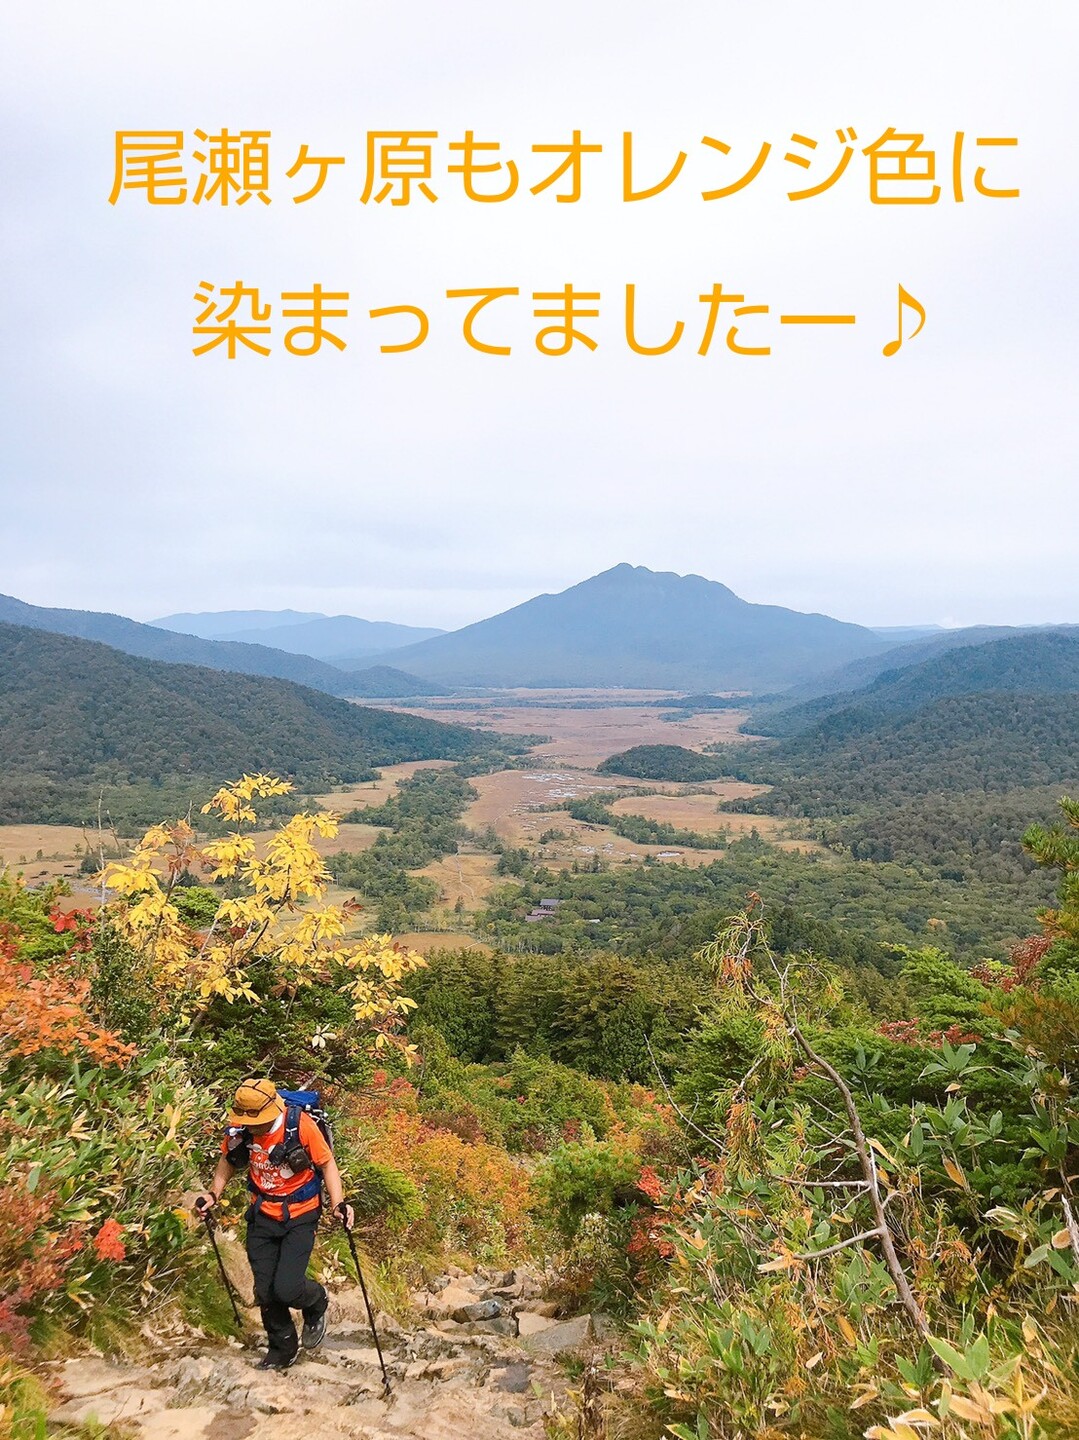 紅葉シーズン到来 至仏山 小至仏山 Takuさんの至仏山 悪沢岳 笠ヶ岳の活動データ Yamap ヤマップ